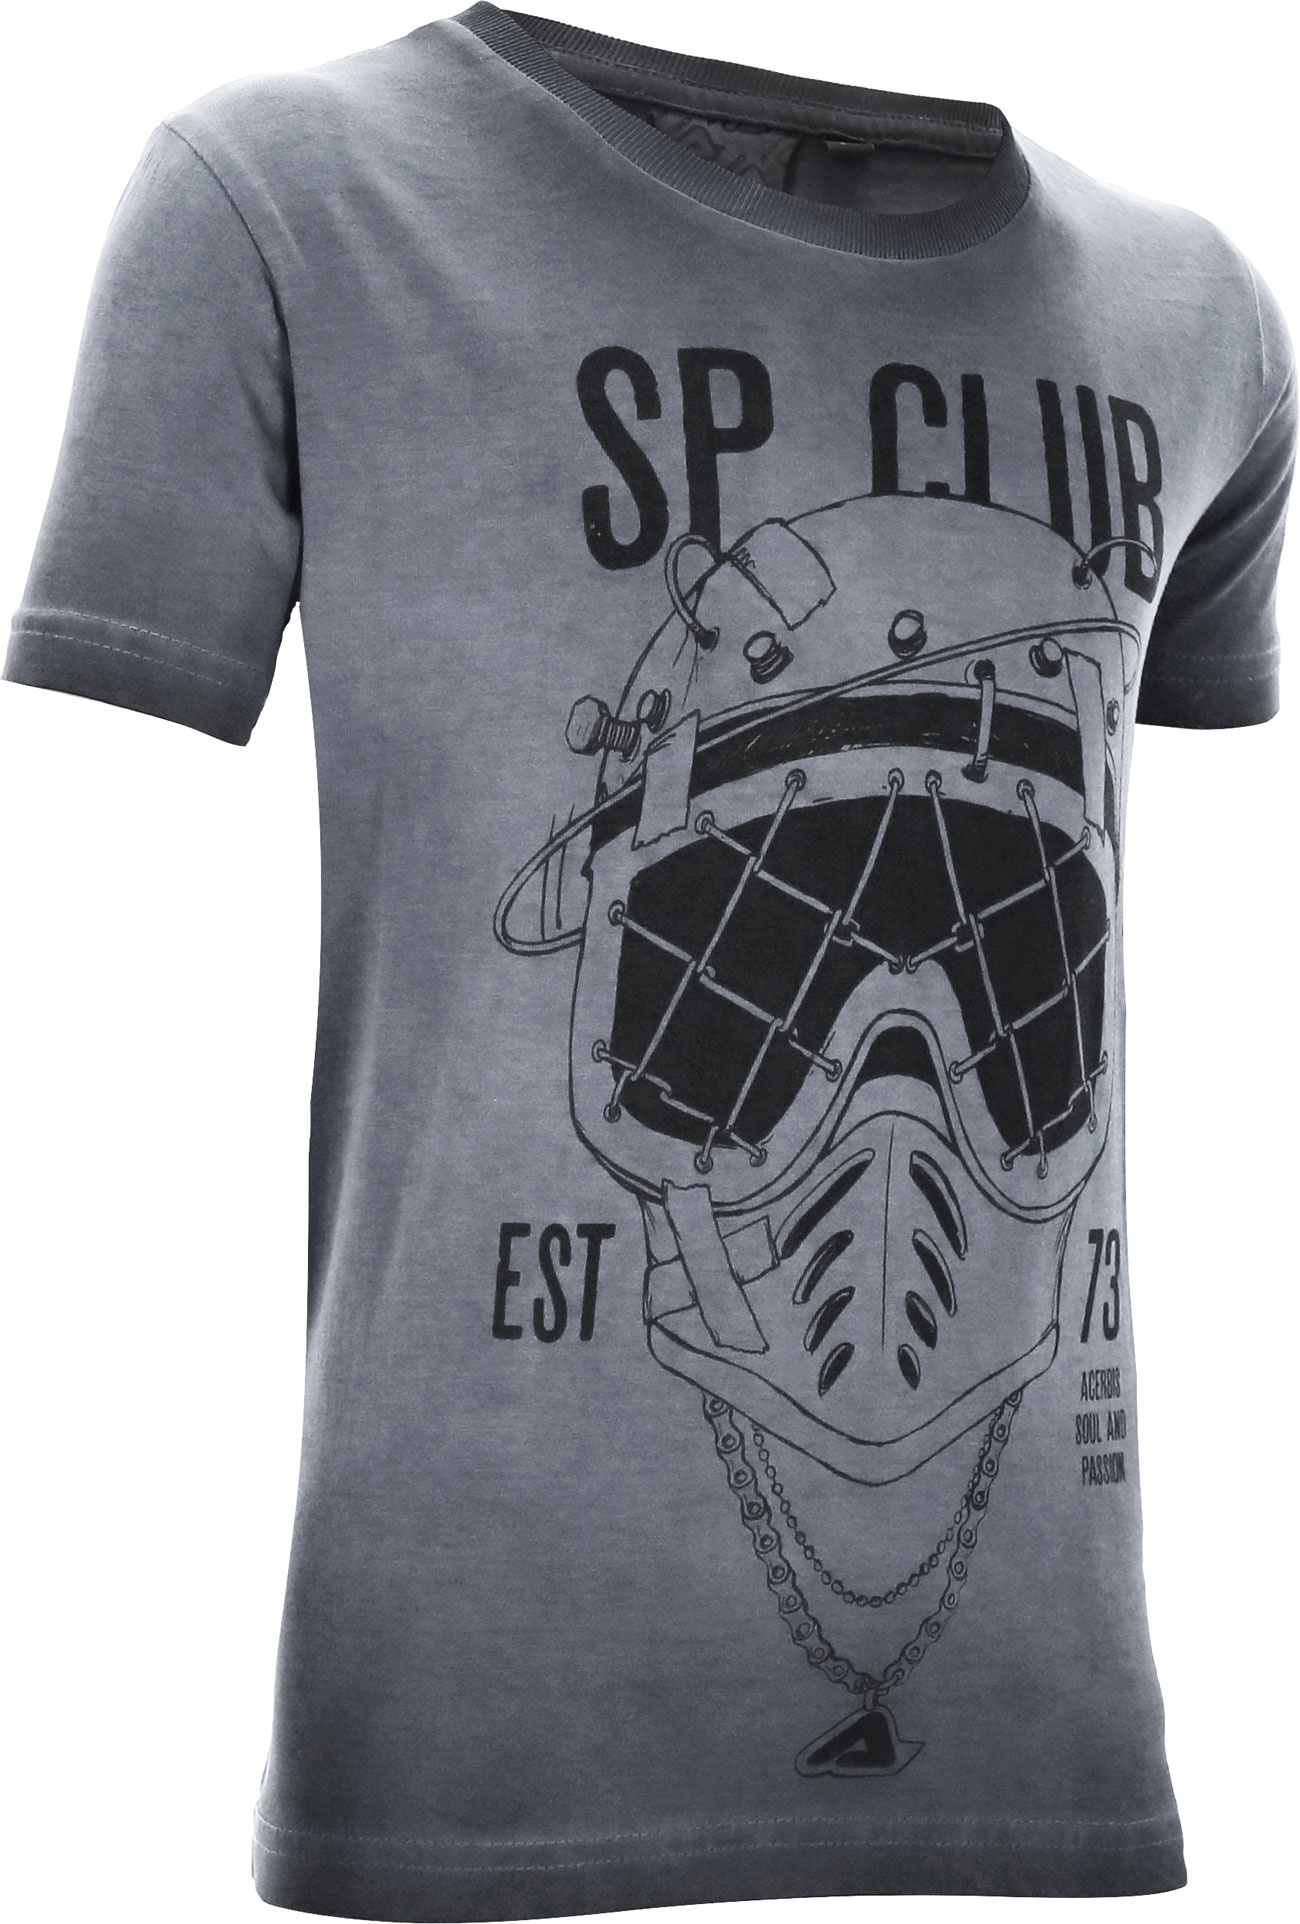 Acerbis SP Club Diver, t-shirt pour enfants - Gris/Noir - L